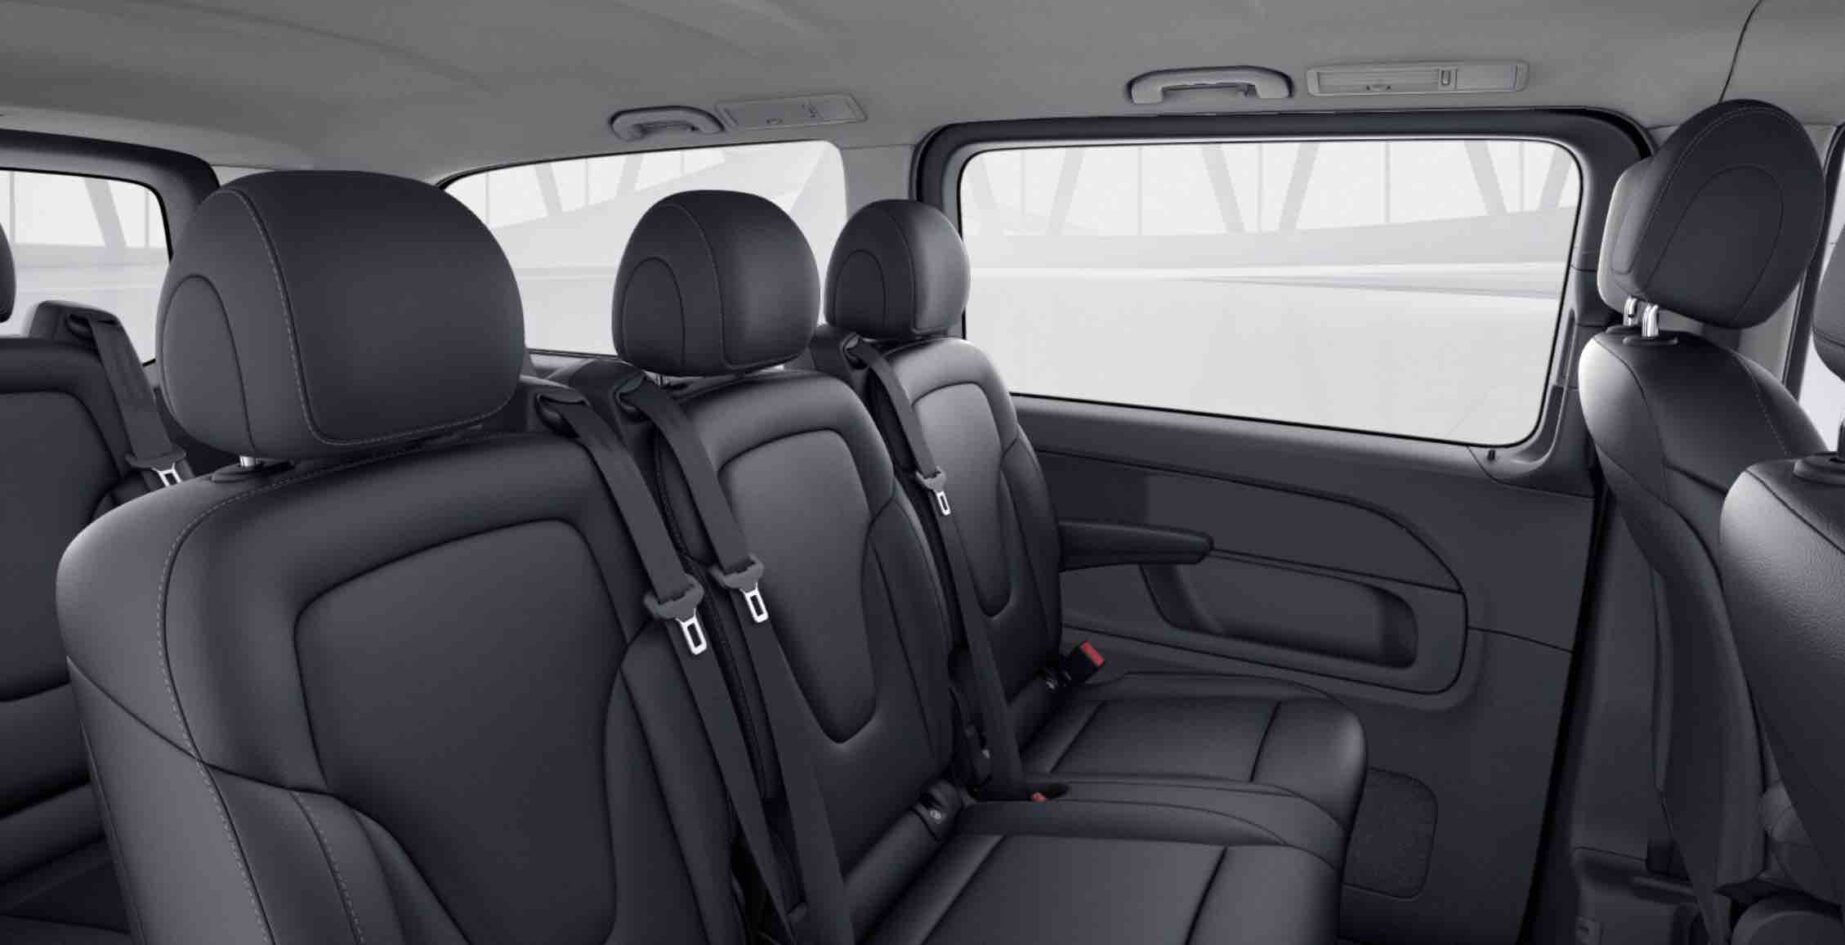 Luxury Chauffeur Car Service Milan – V Class Minivan Interior